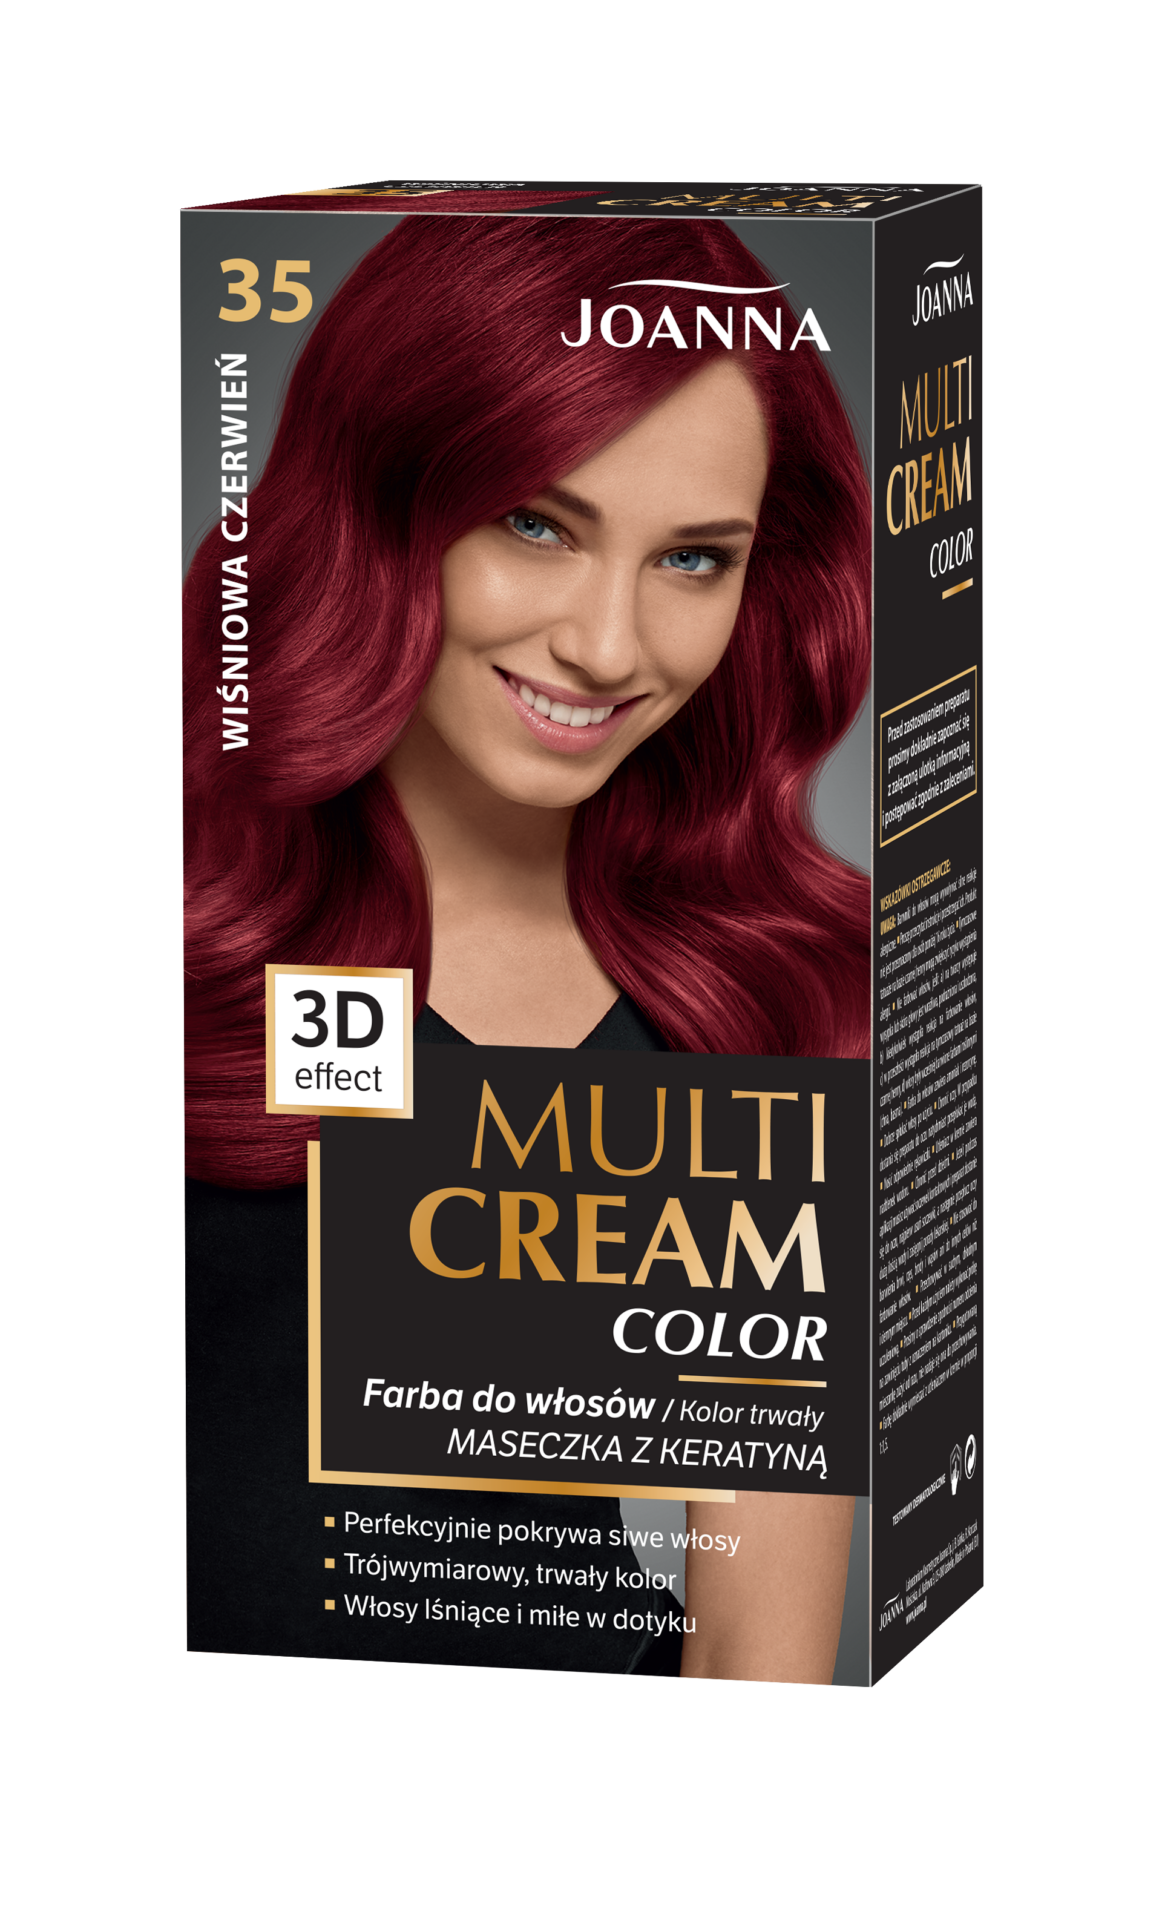 Trwała farba do włosów Joanna Multi Cream Color w odcieniu wiśniowa czerwień nr 35